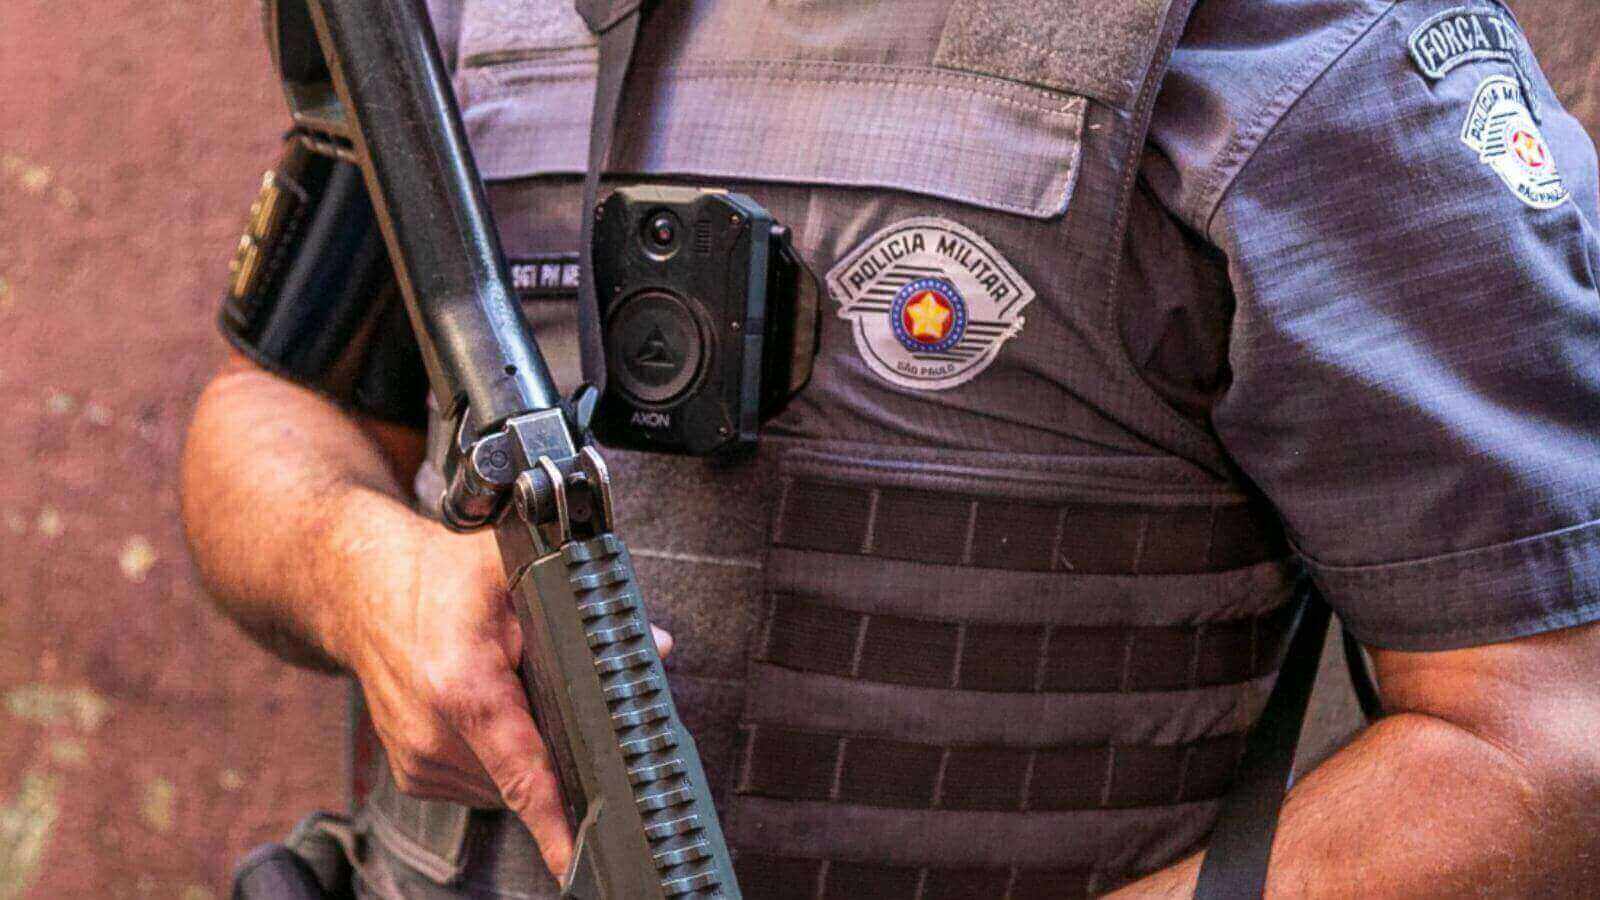 Policial Militar do Estado de São Paulo com arma nas mãos e câmera corporal no peito.